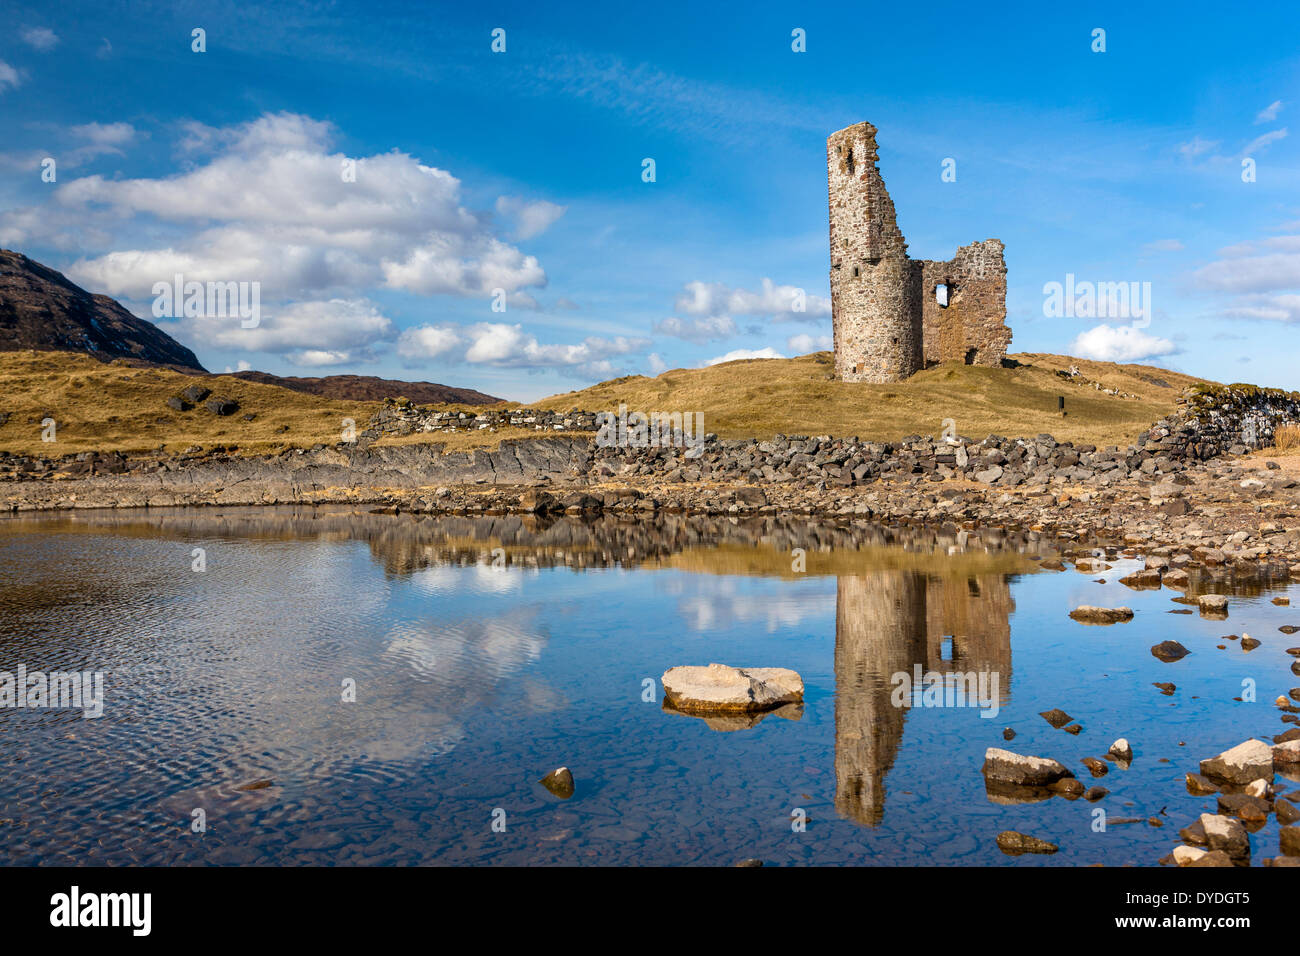 El castillo de Ardvreck que es las ruinas de un castillo del siglo XVI en las orillas del lago Loch Assynt. Foto de stock